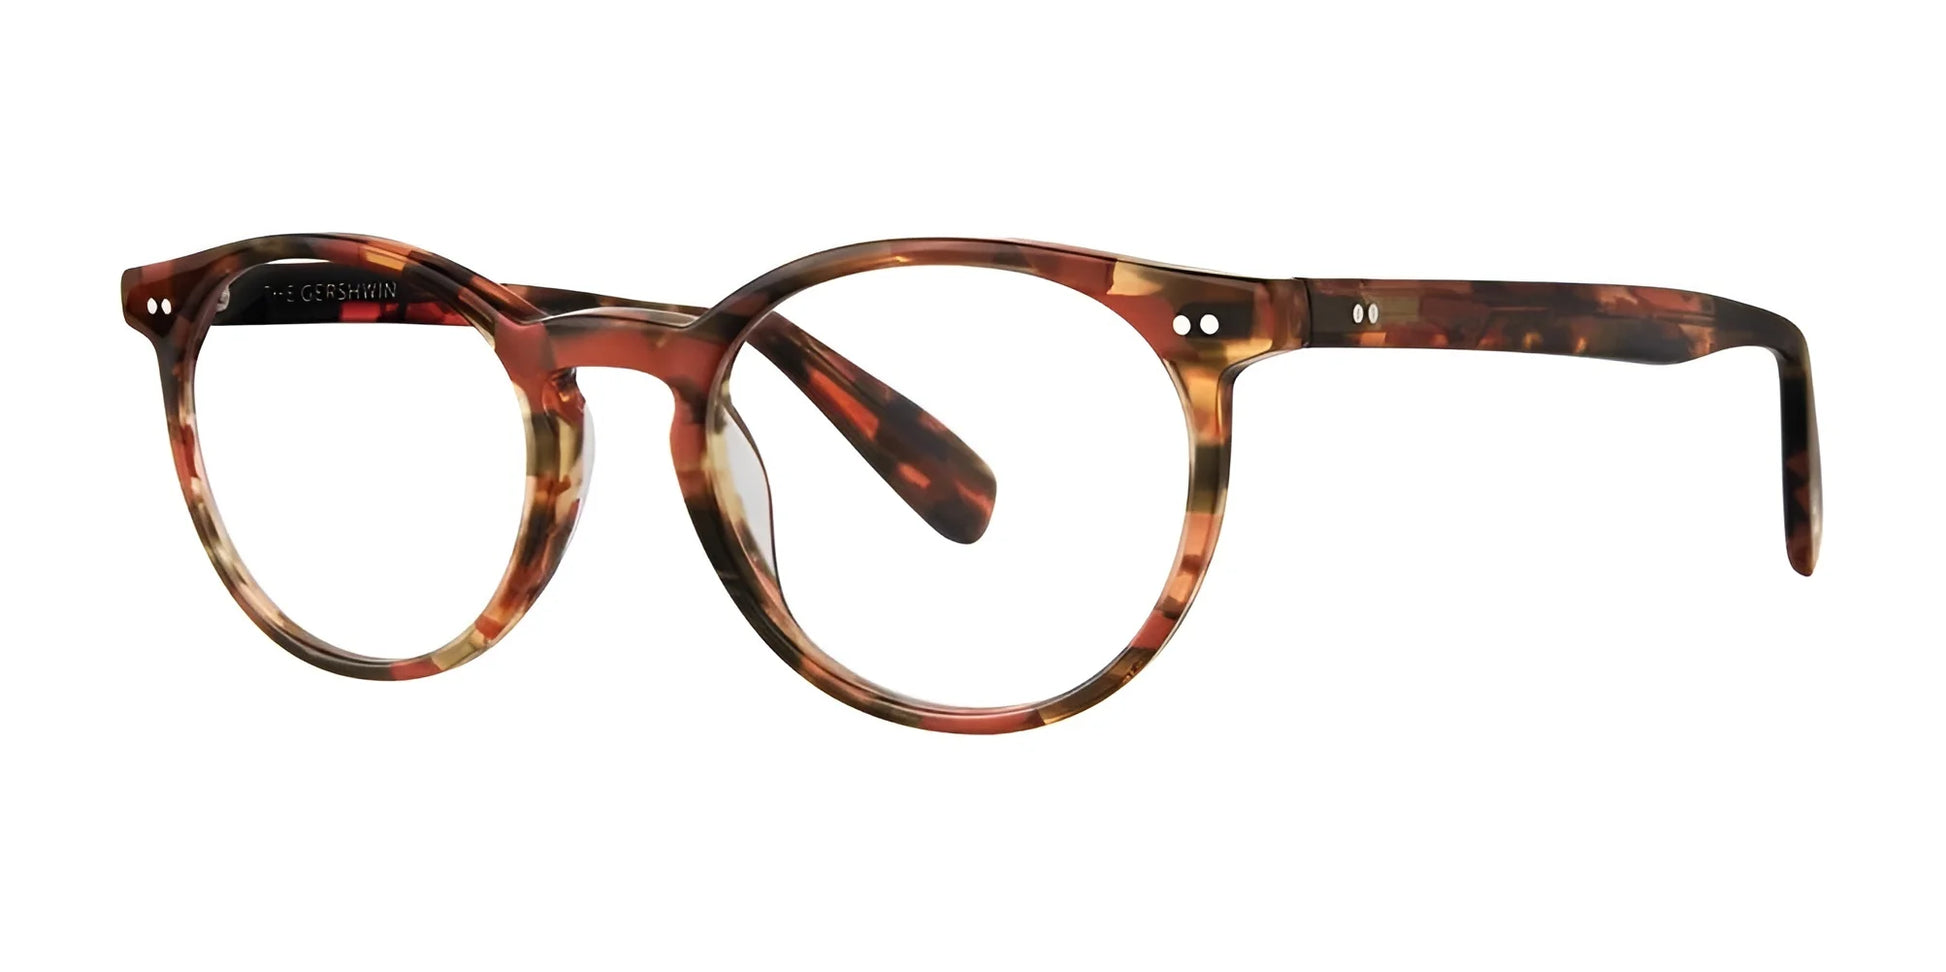 SCOJO THE GERSHWIN Eyeglasses Amber Tortoise